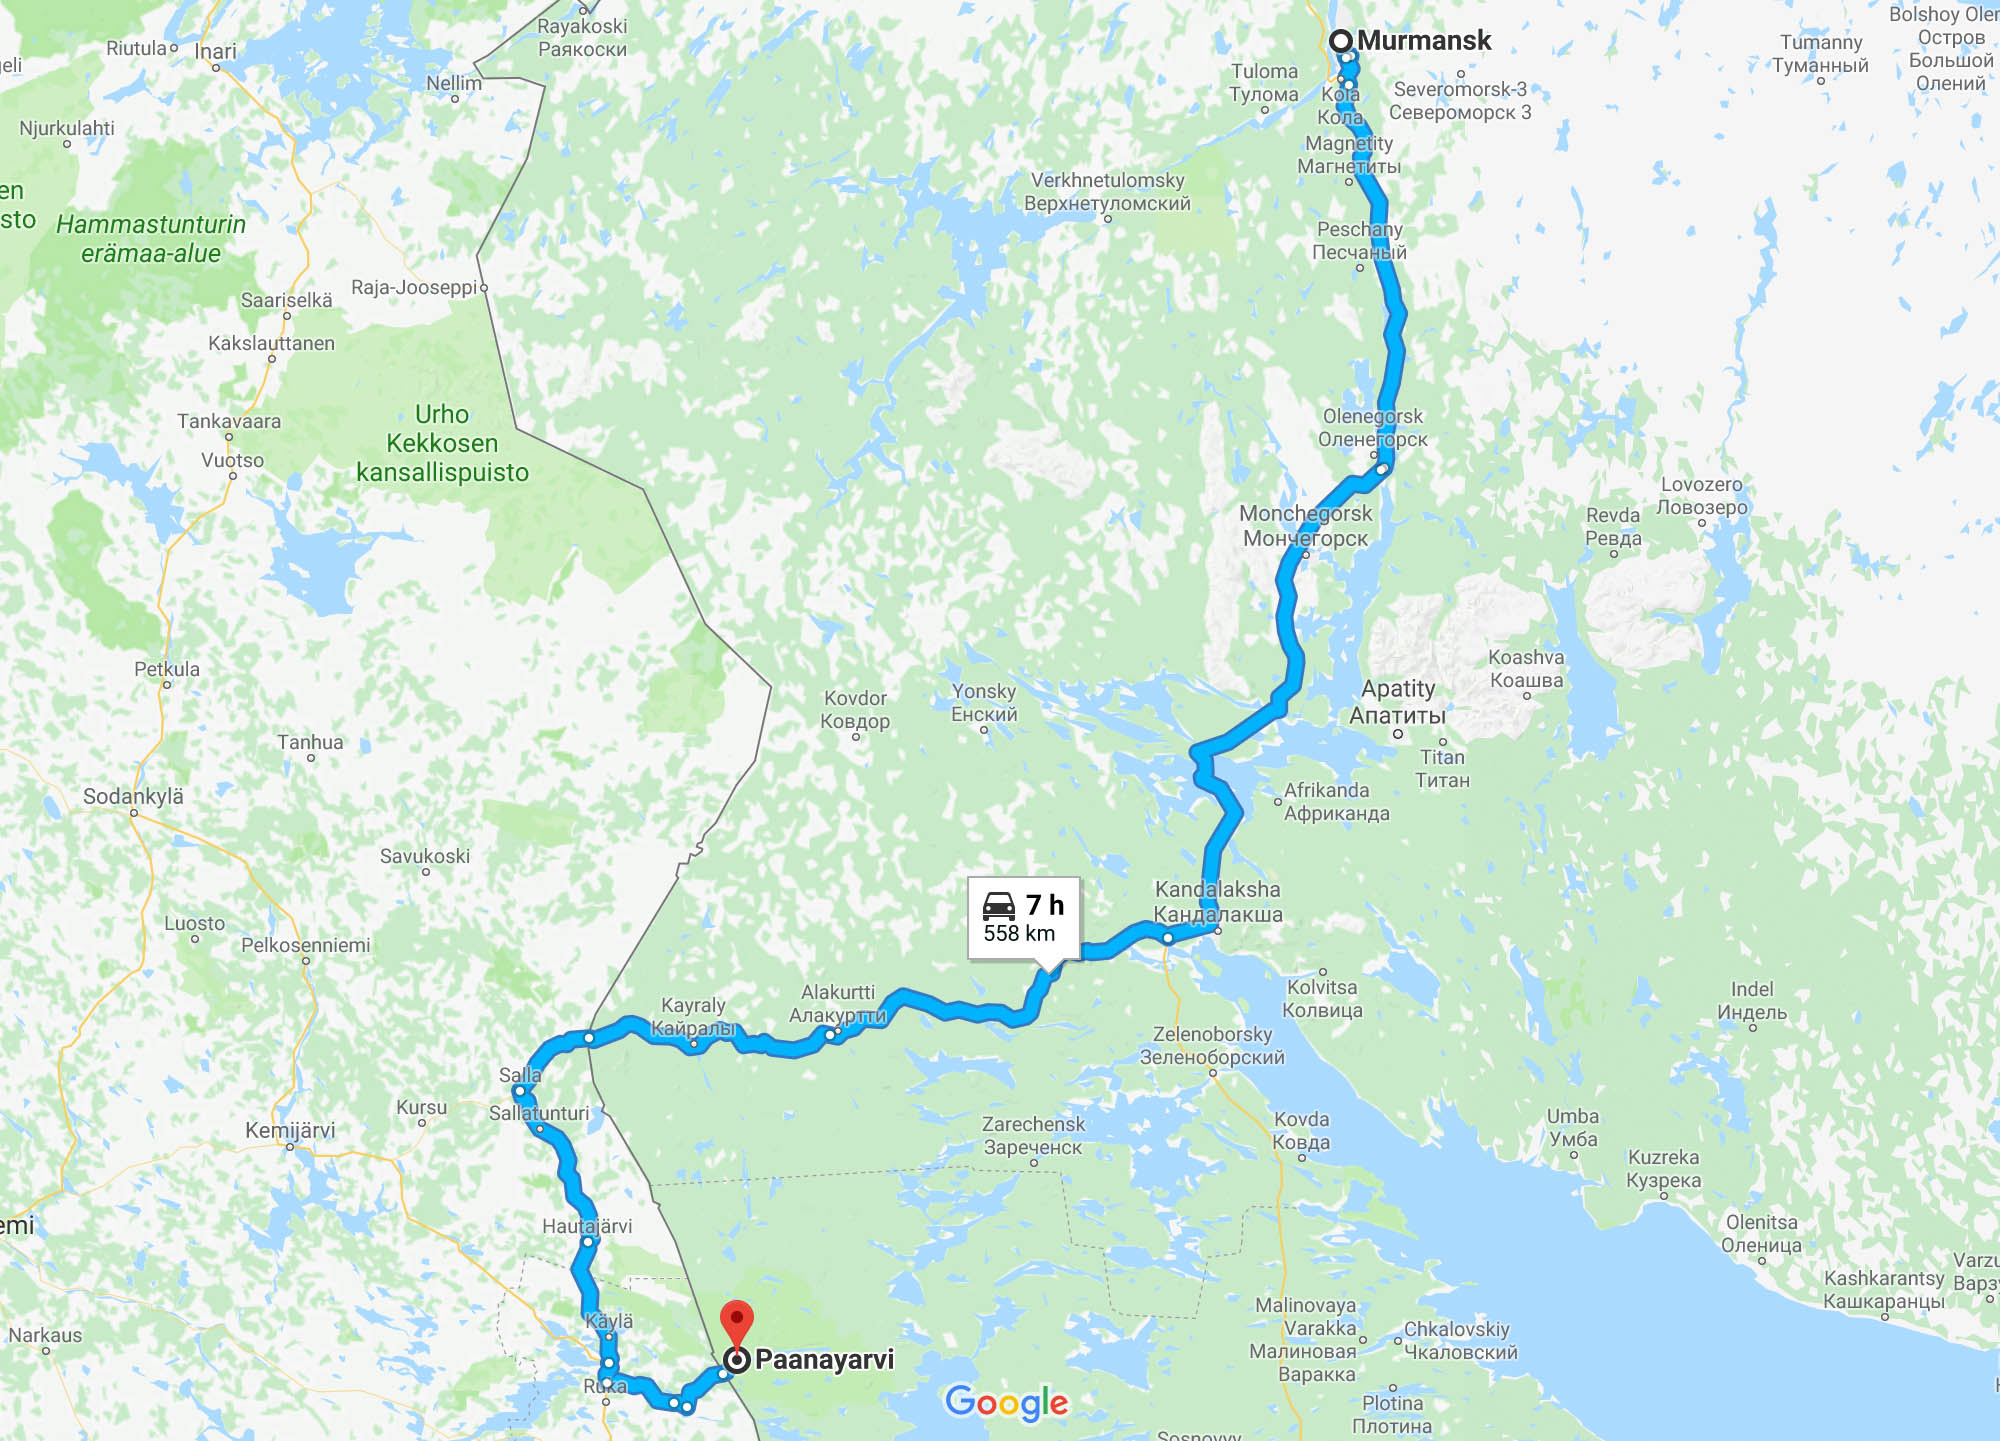 Гугл-мэпс предлагает ехать из Мурманска через российское село Алакуртти и Финляндию. В этом нет смысла, даже если у вас есть открытый шенген. Лучше ехать по трассе «Кола» и свернуть к поселку Пяозерский